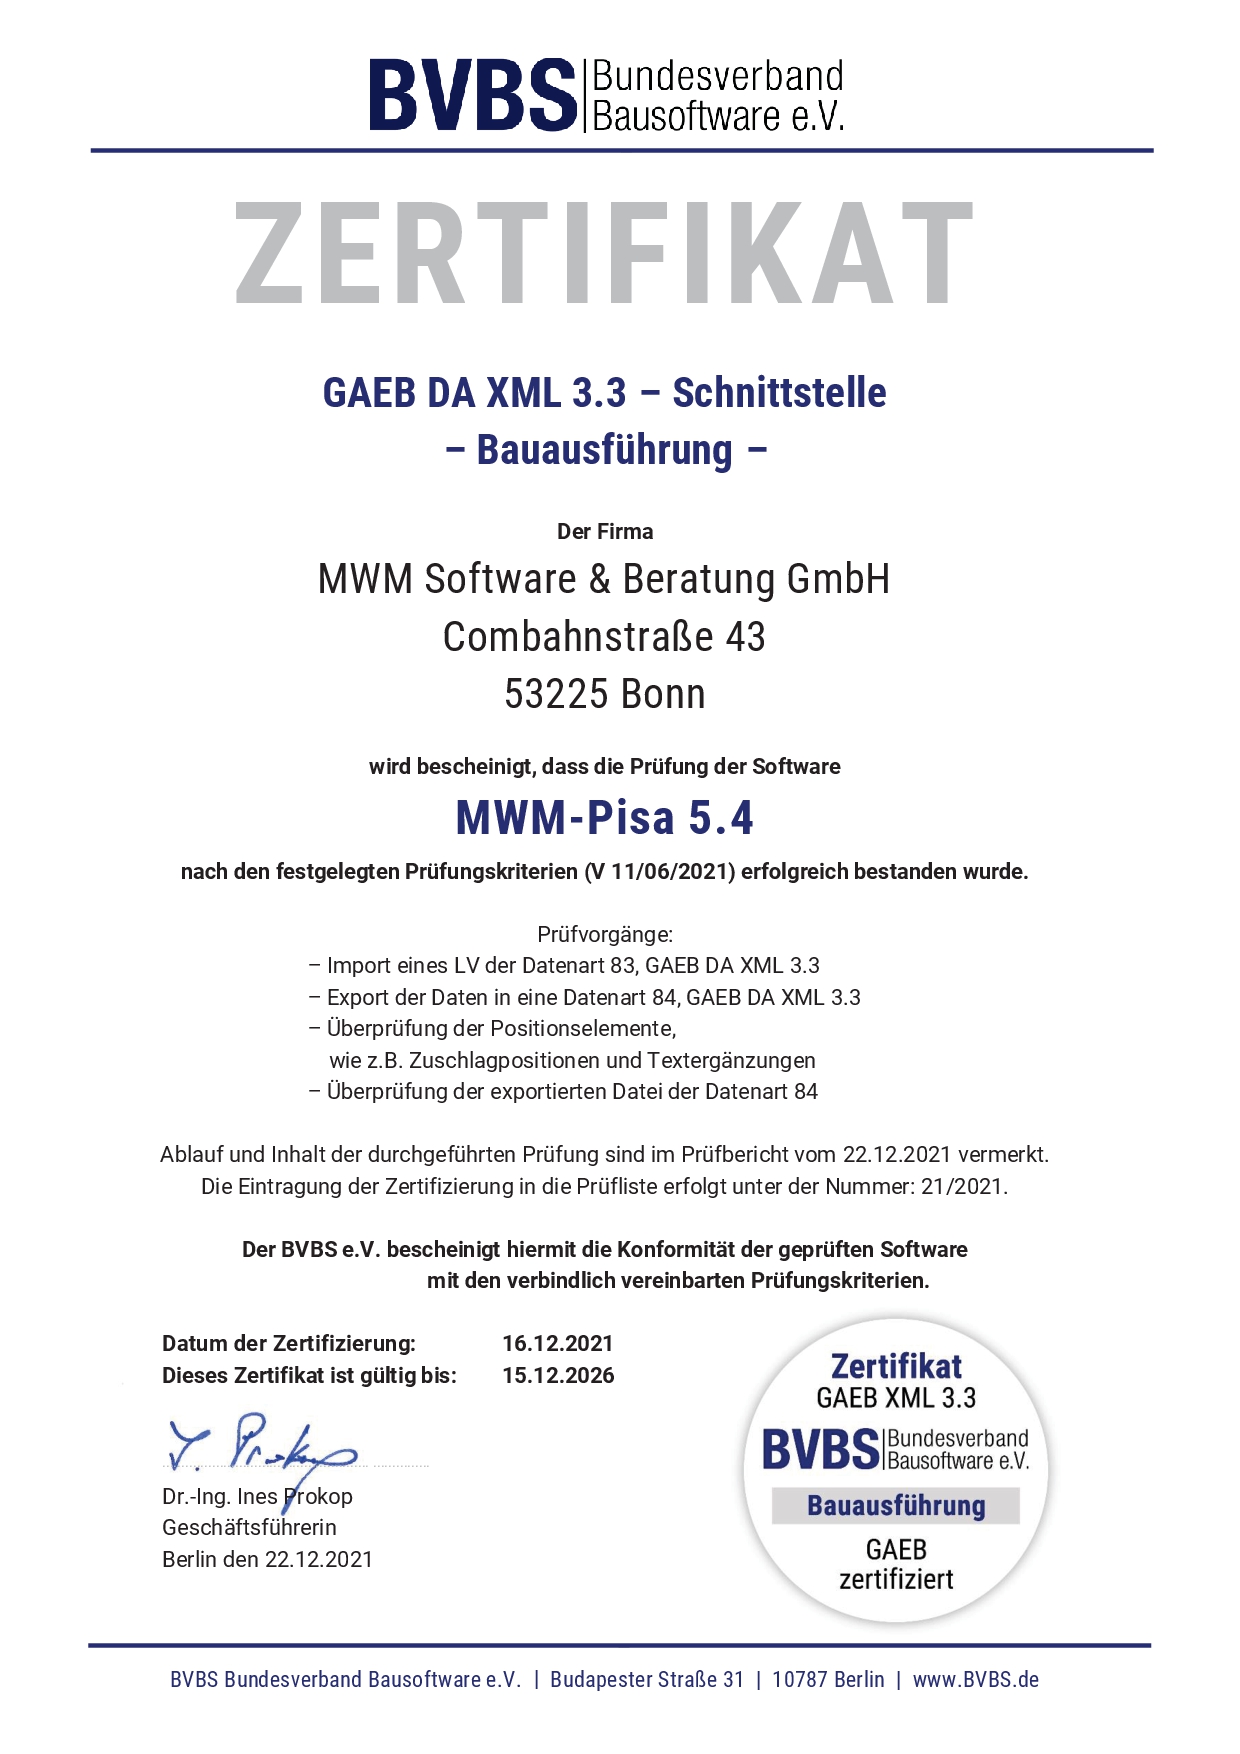 GAEB-Zertifizierung für MWM-Pisa 5.4